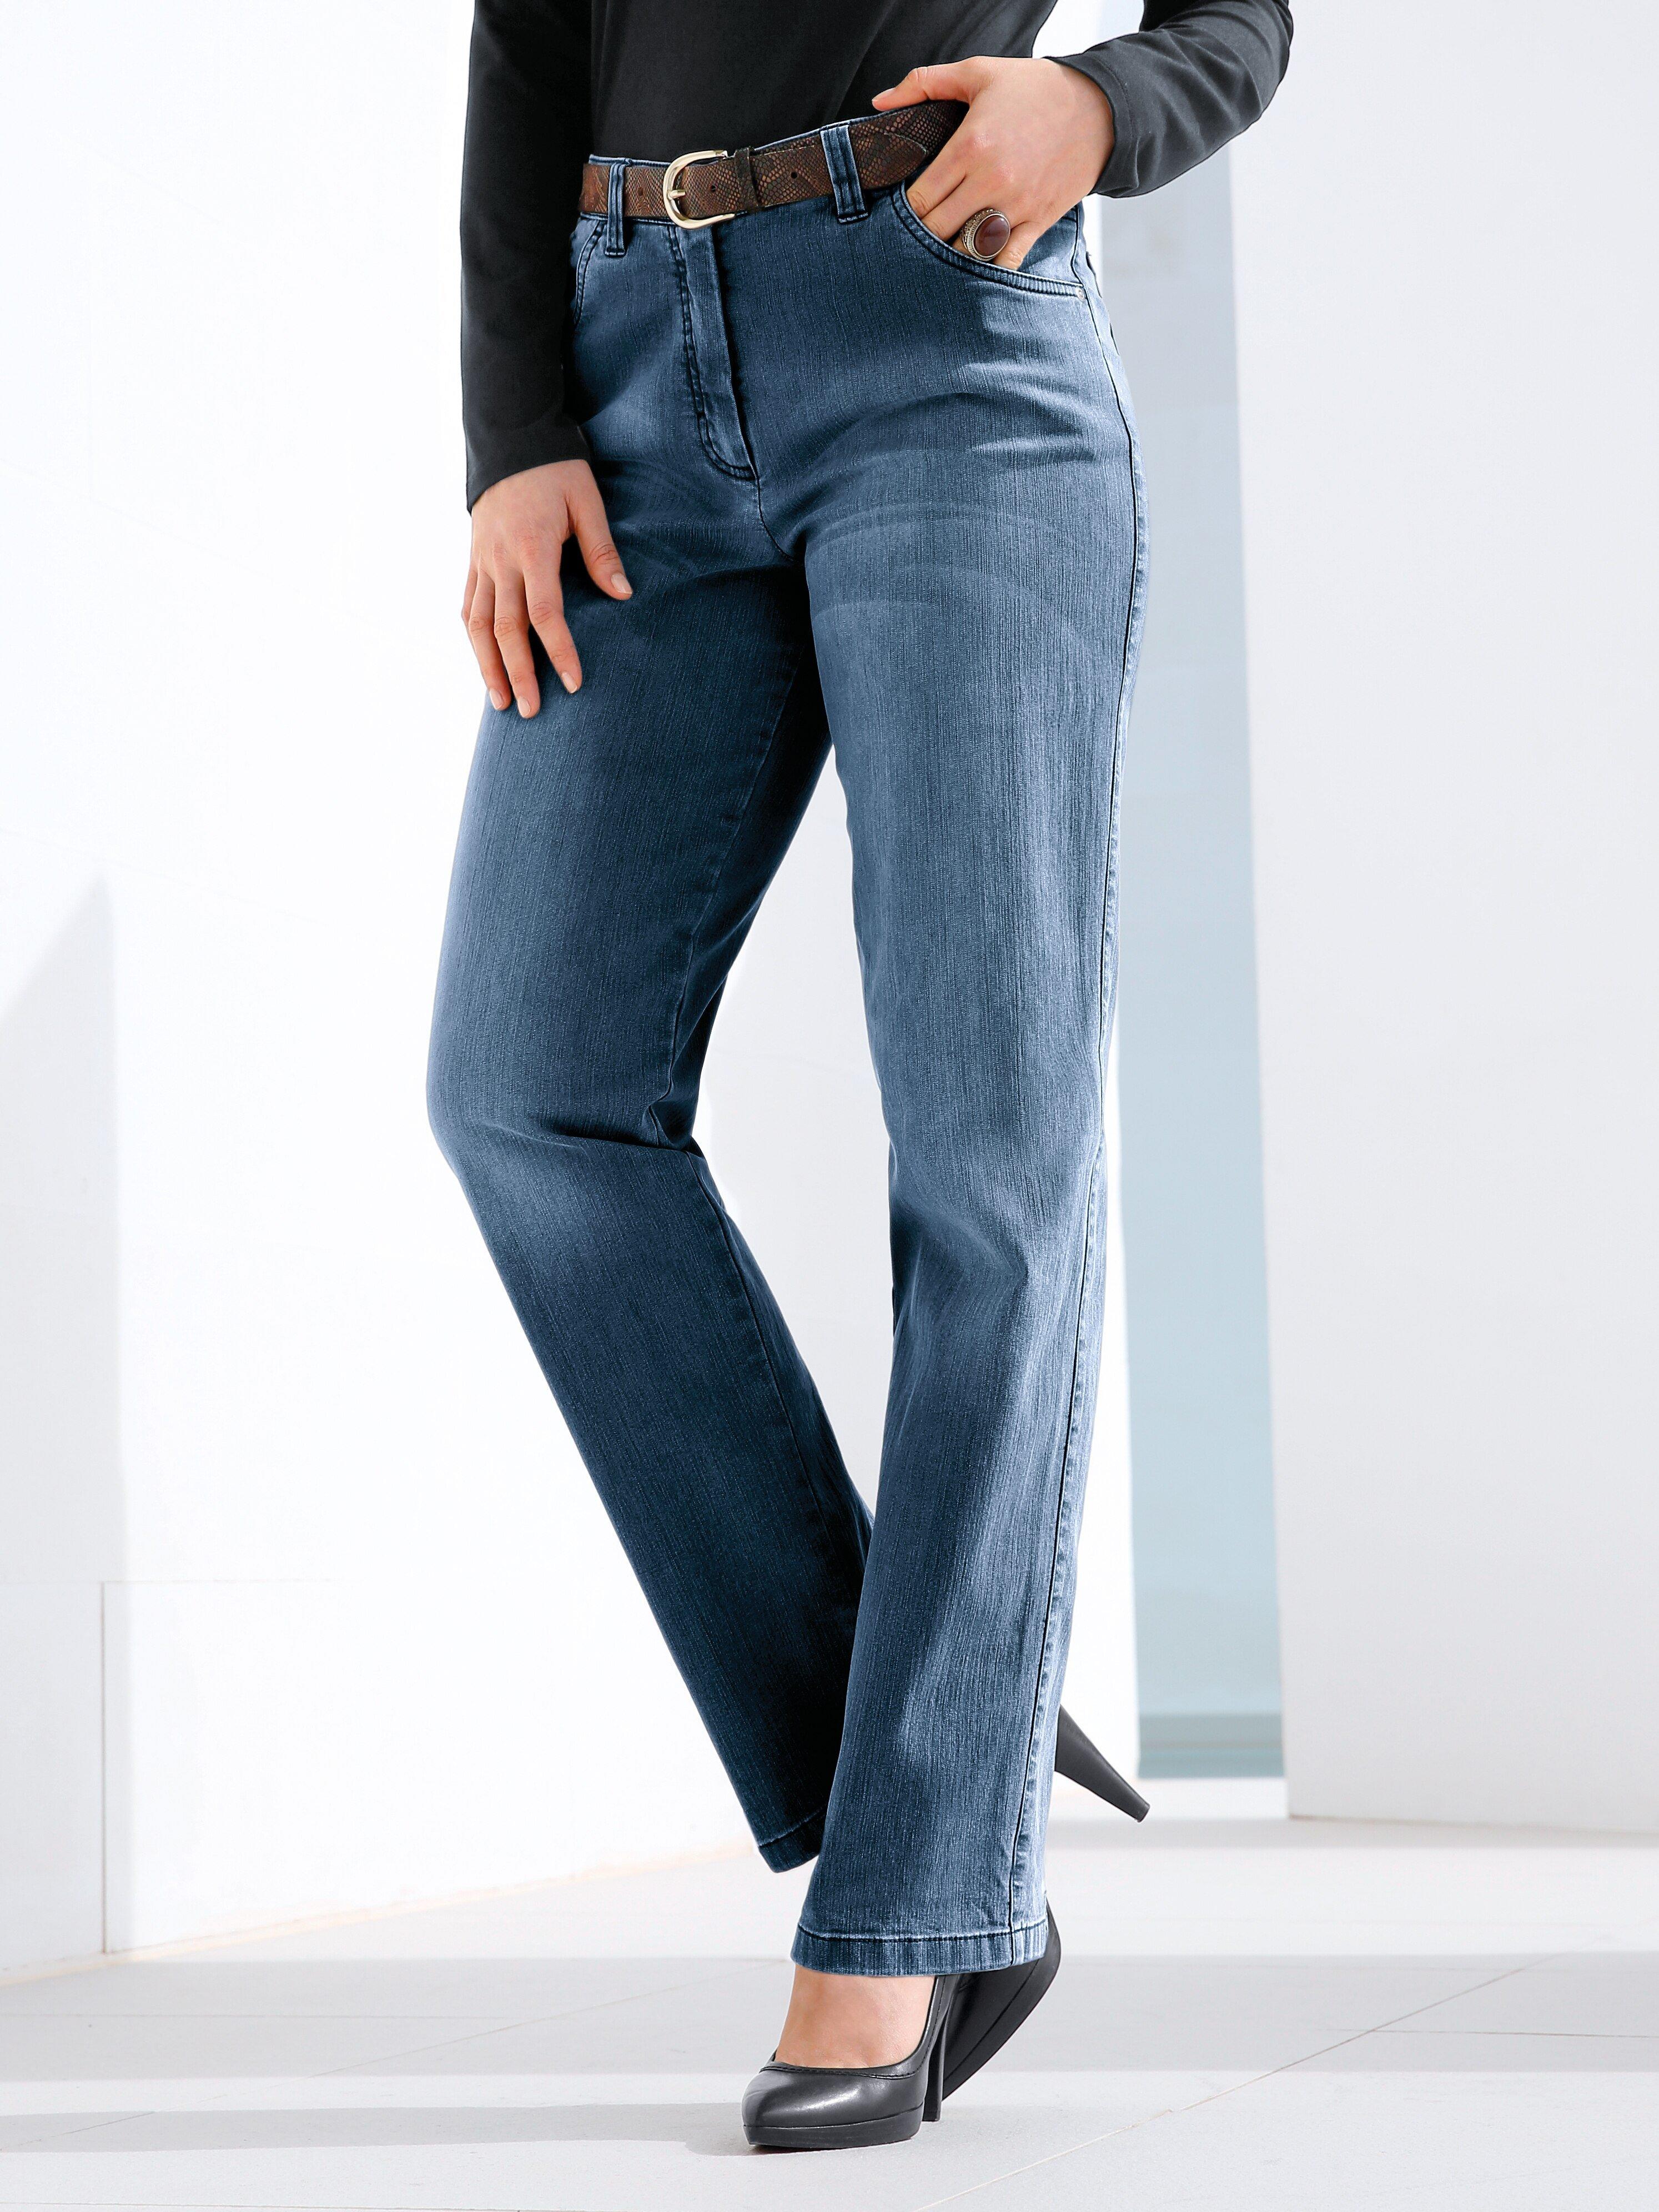 KjBrand - Jeans Modell Babsie Straight Leg